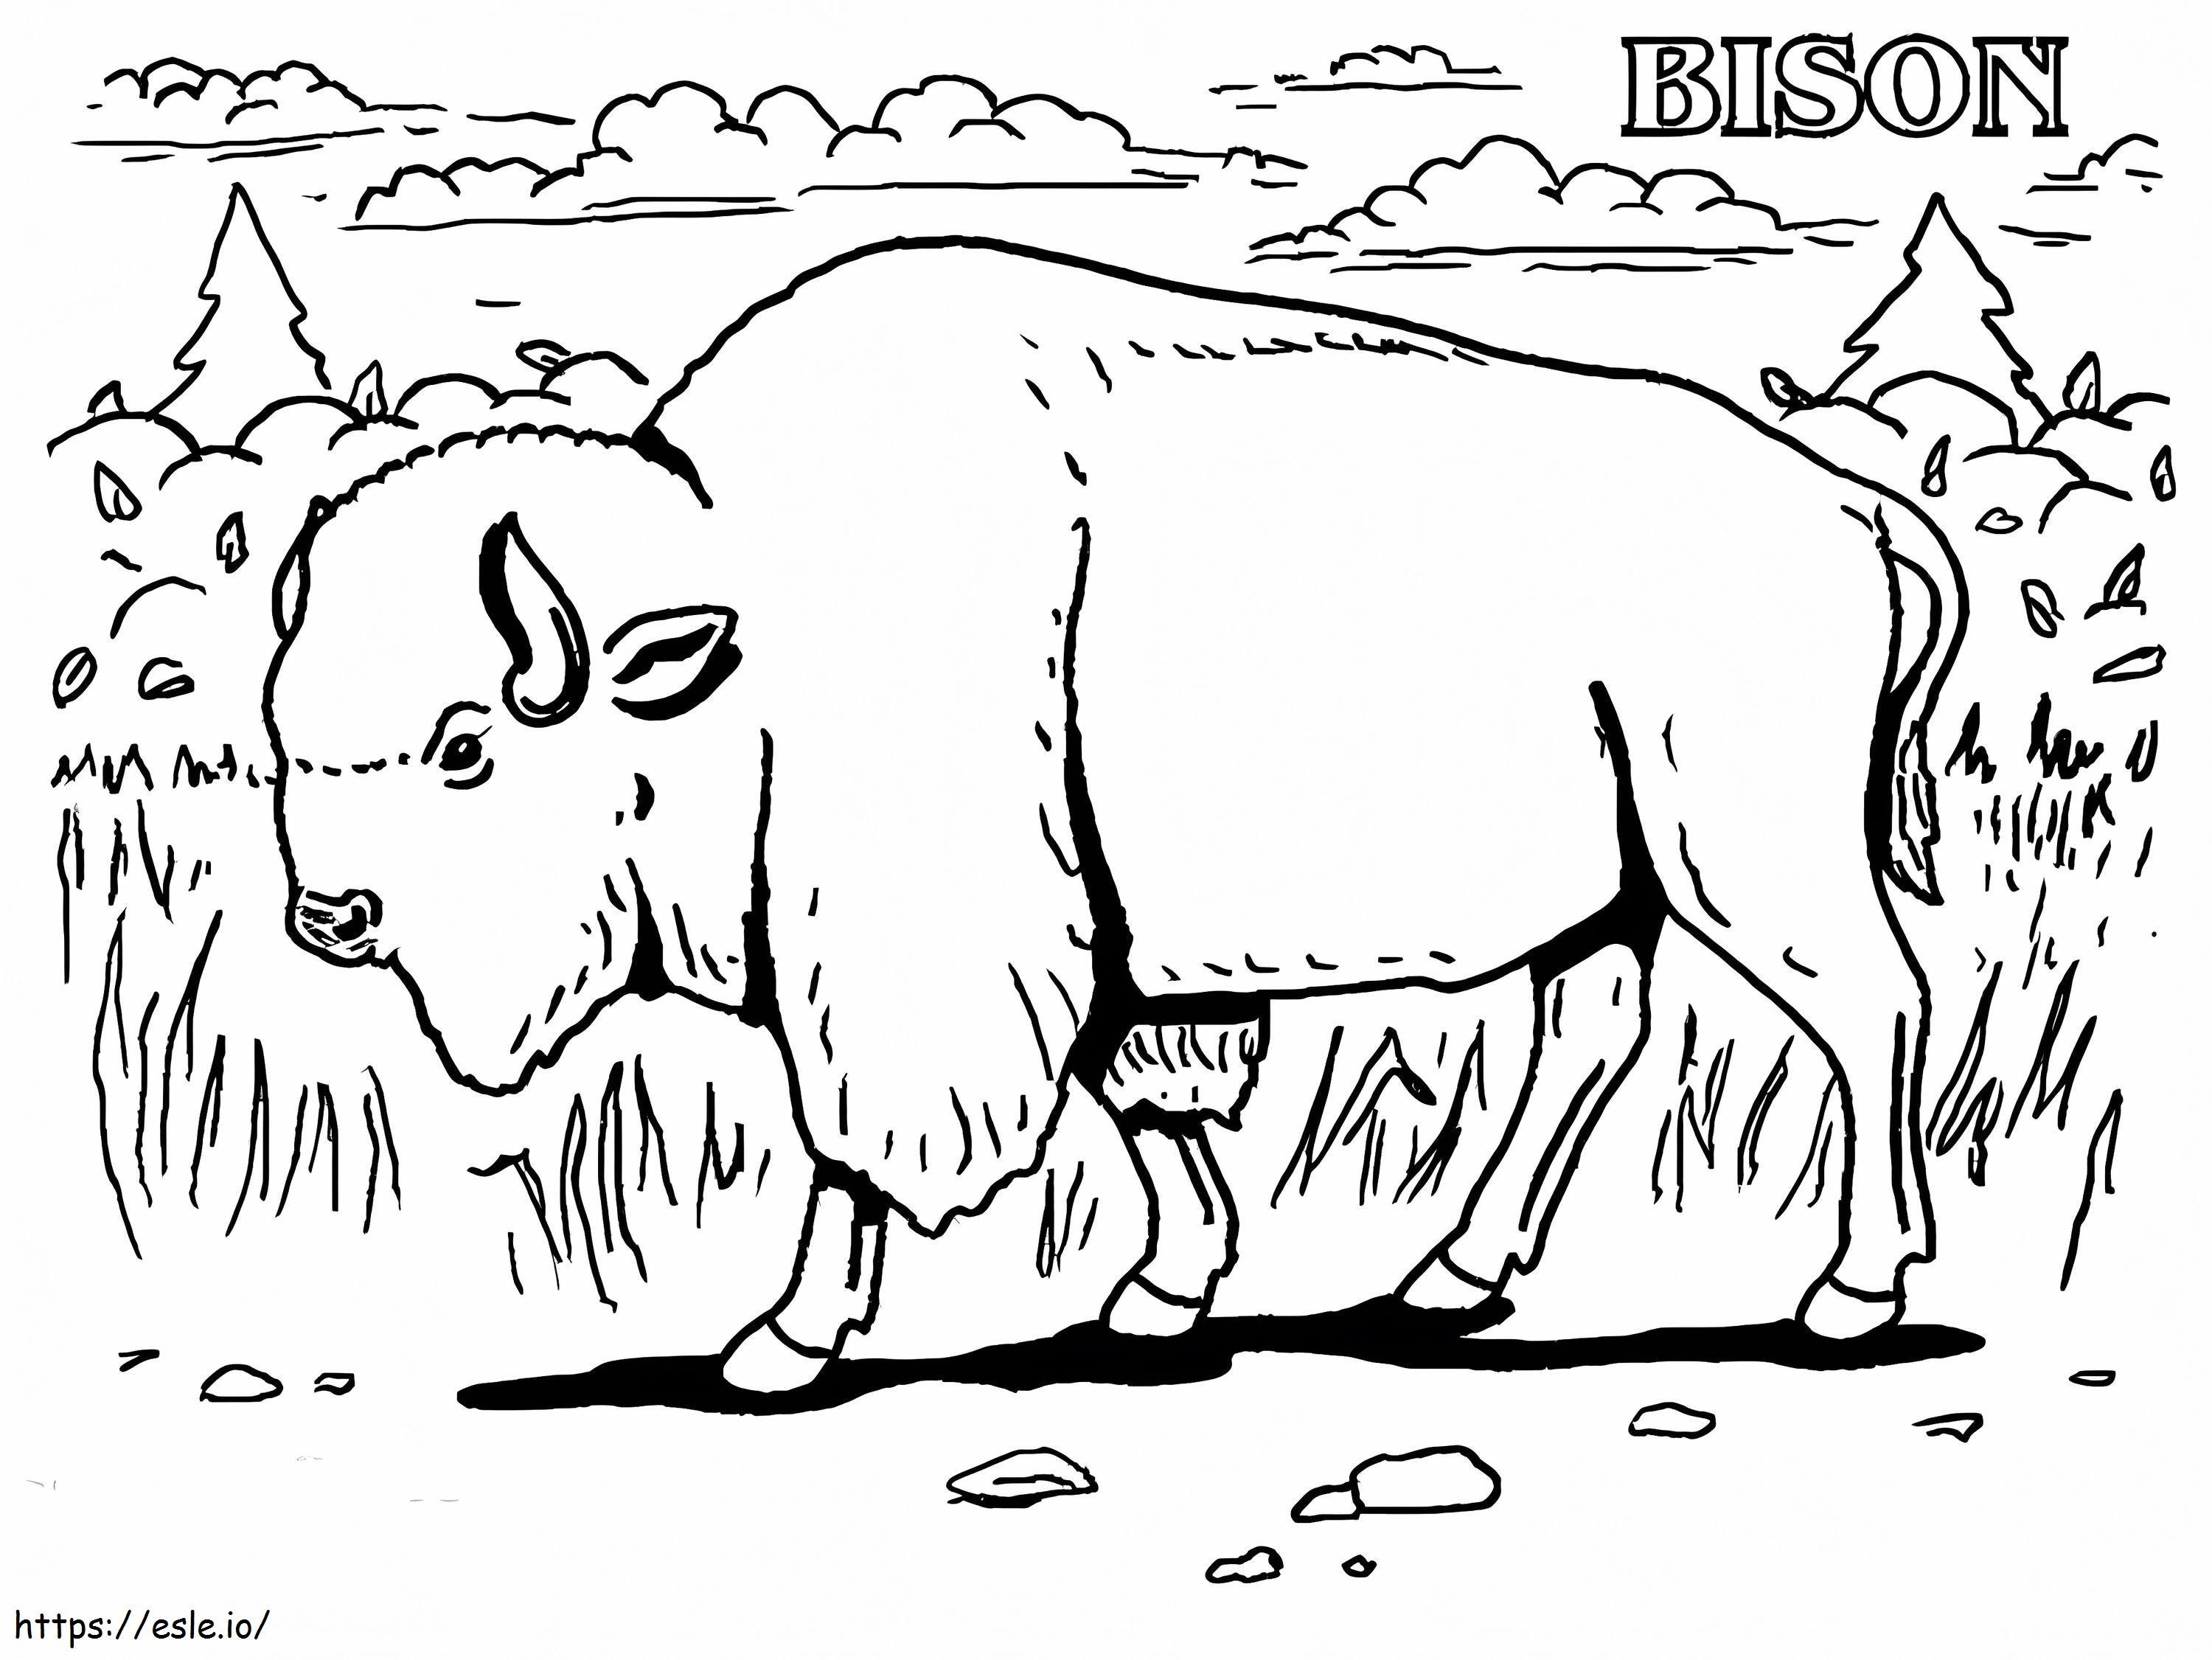 Ein wilder Bison ausmalbilder